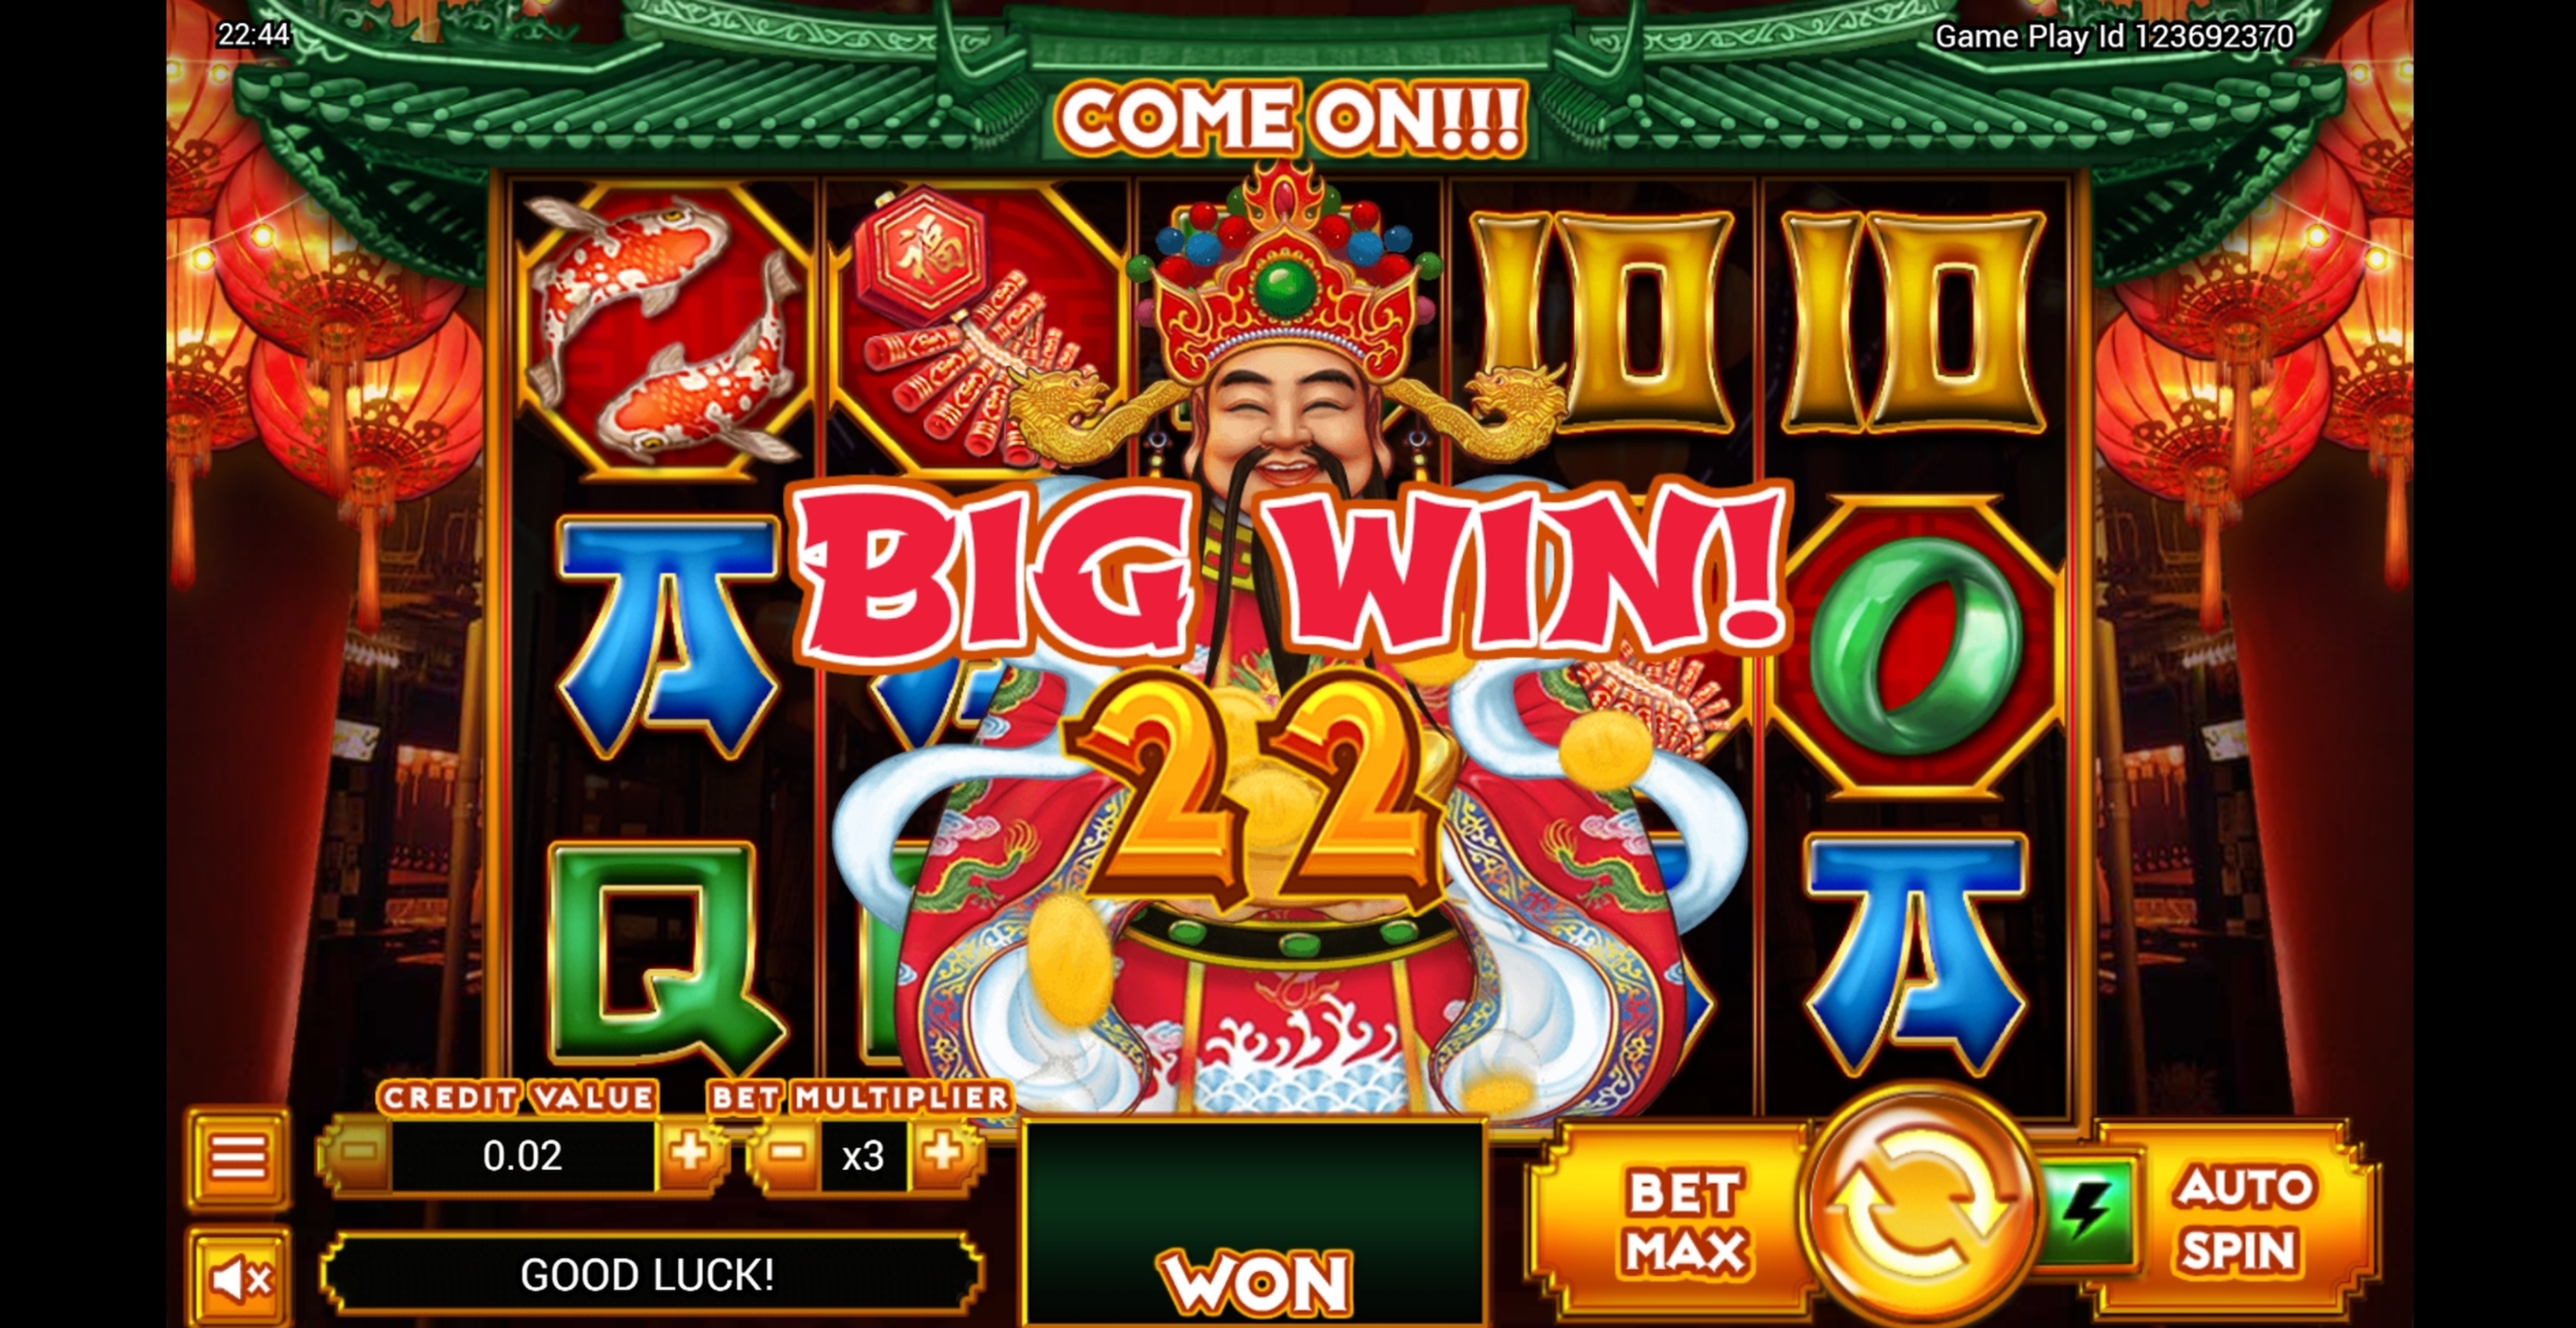 Ying Cai Shen Slot Machine